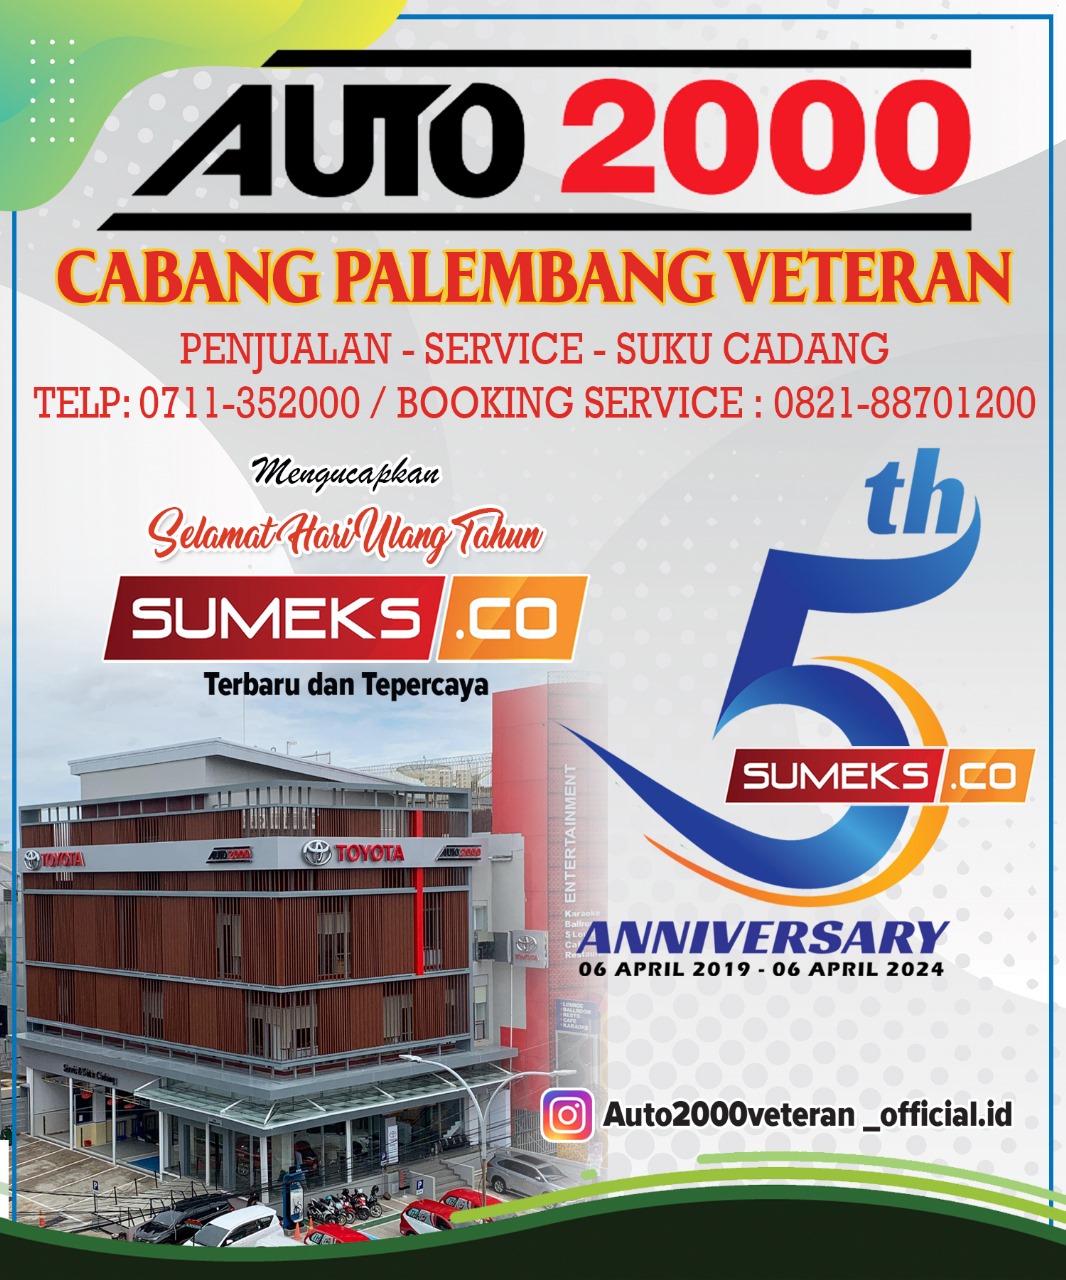 Auto2000 Cabang Palembang Veteran Mengucapkan HUT SUMEKS.CO ke 5 Tahun